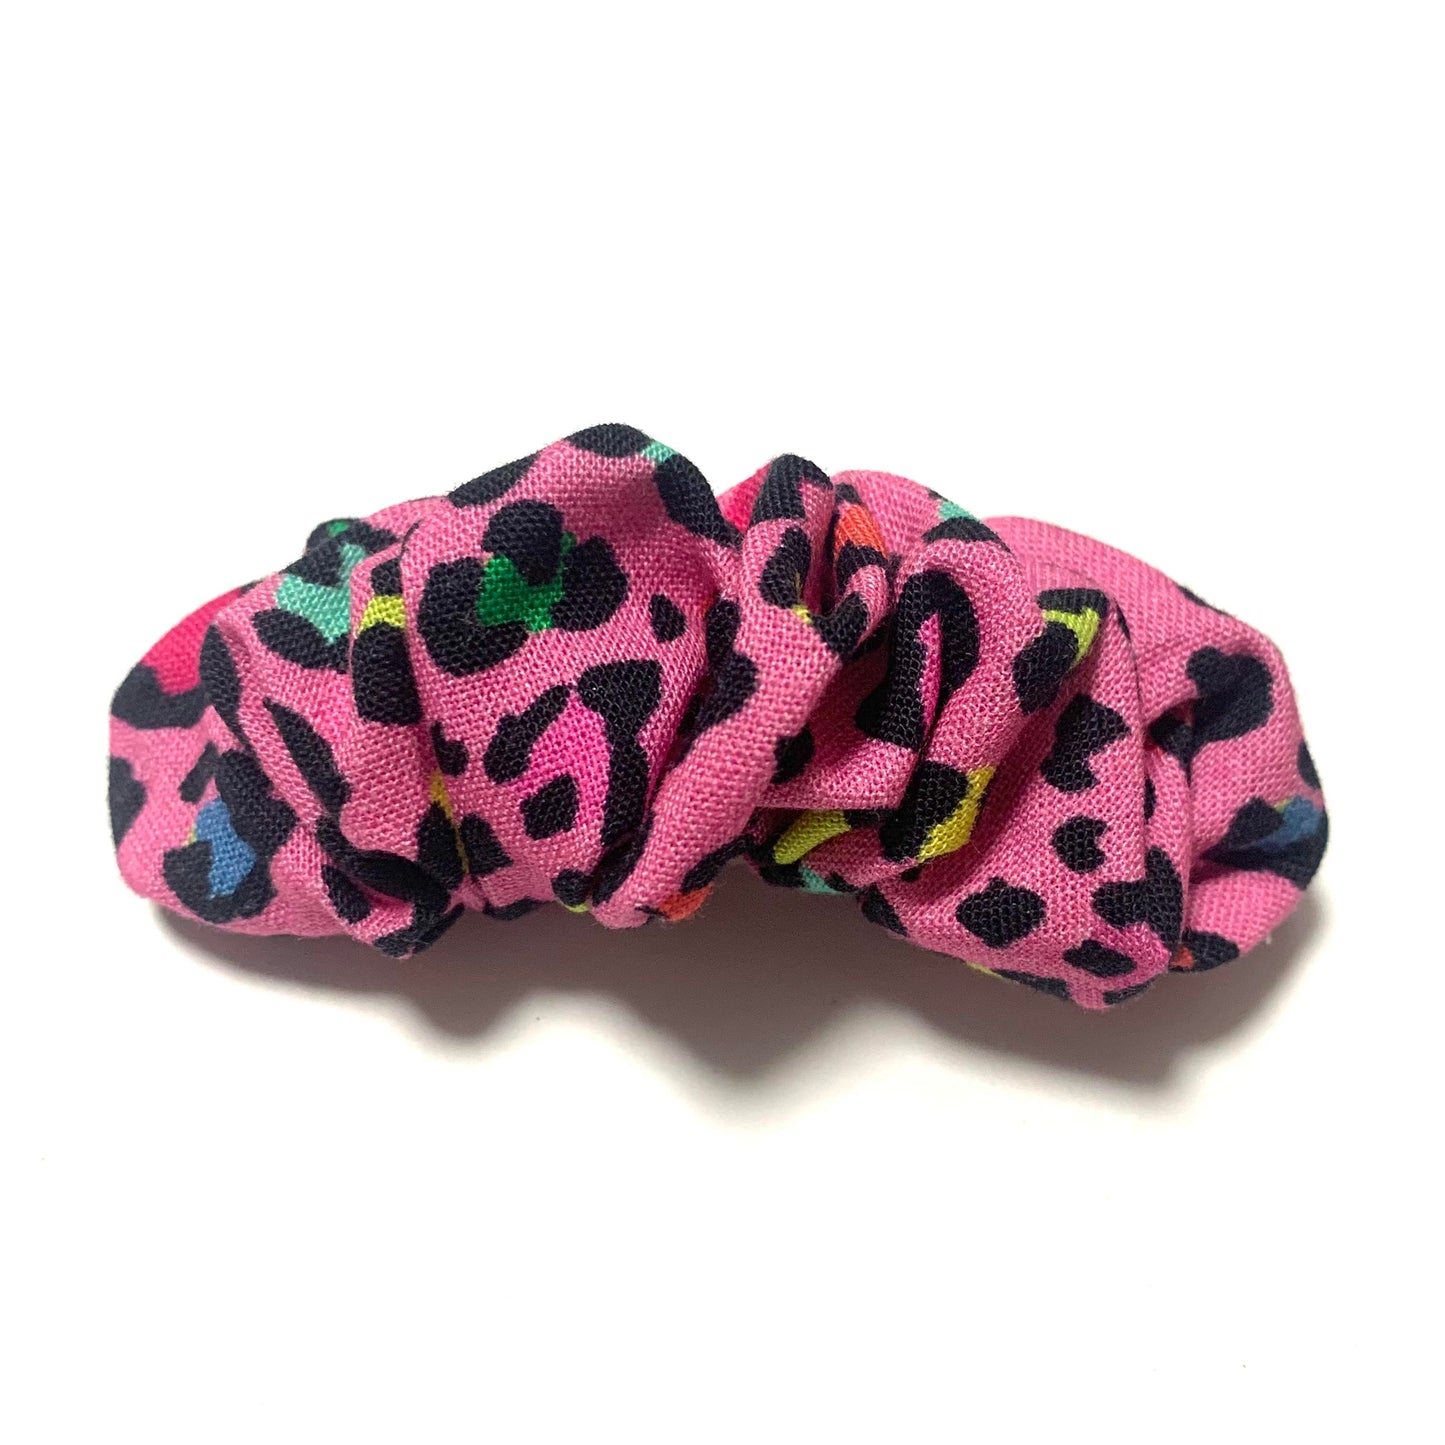 MAKIN WHOOPEE - SCRUNCHIE BARRETTE - Pink Leopard